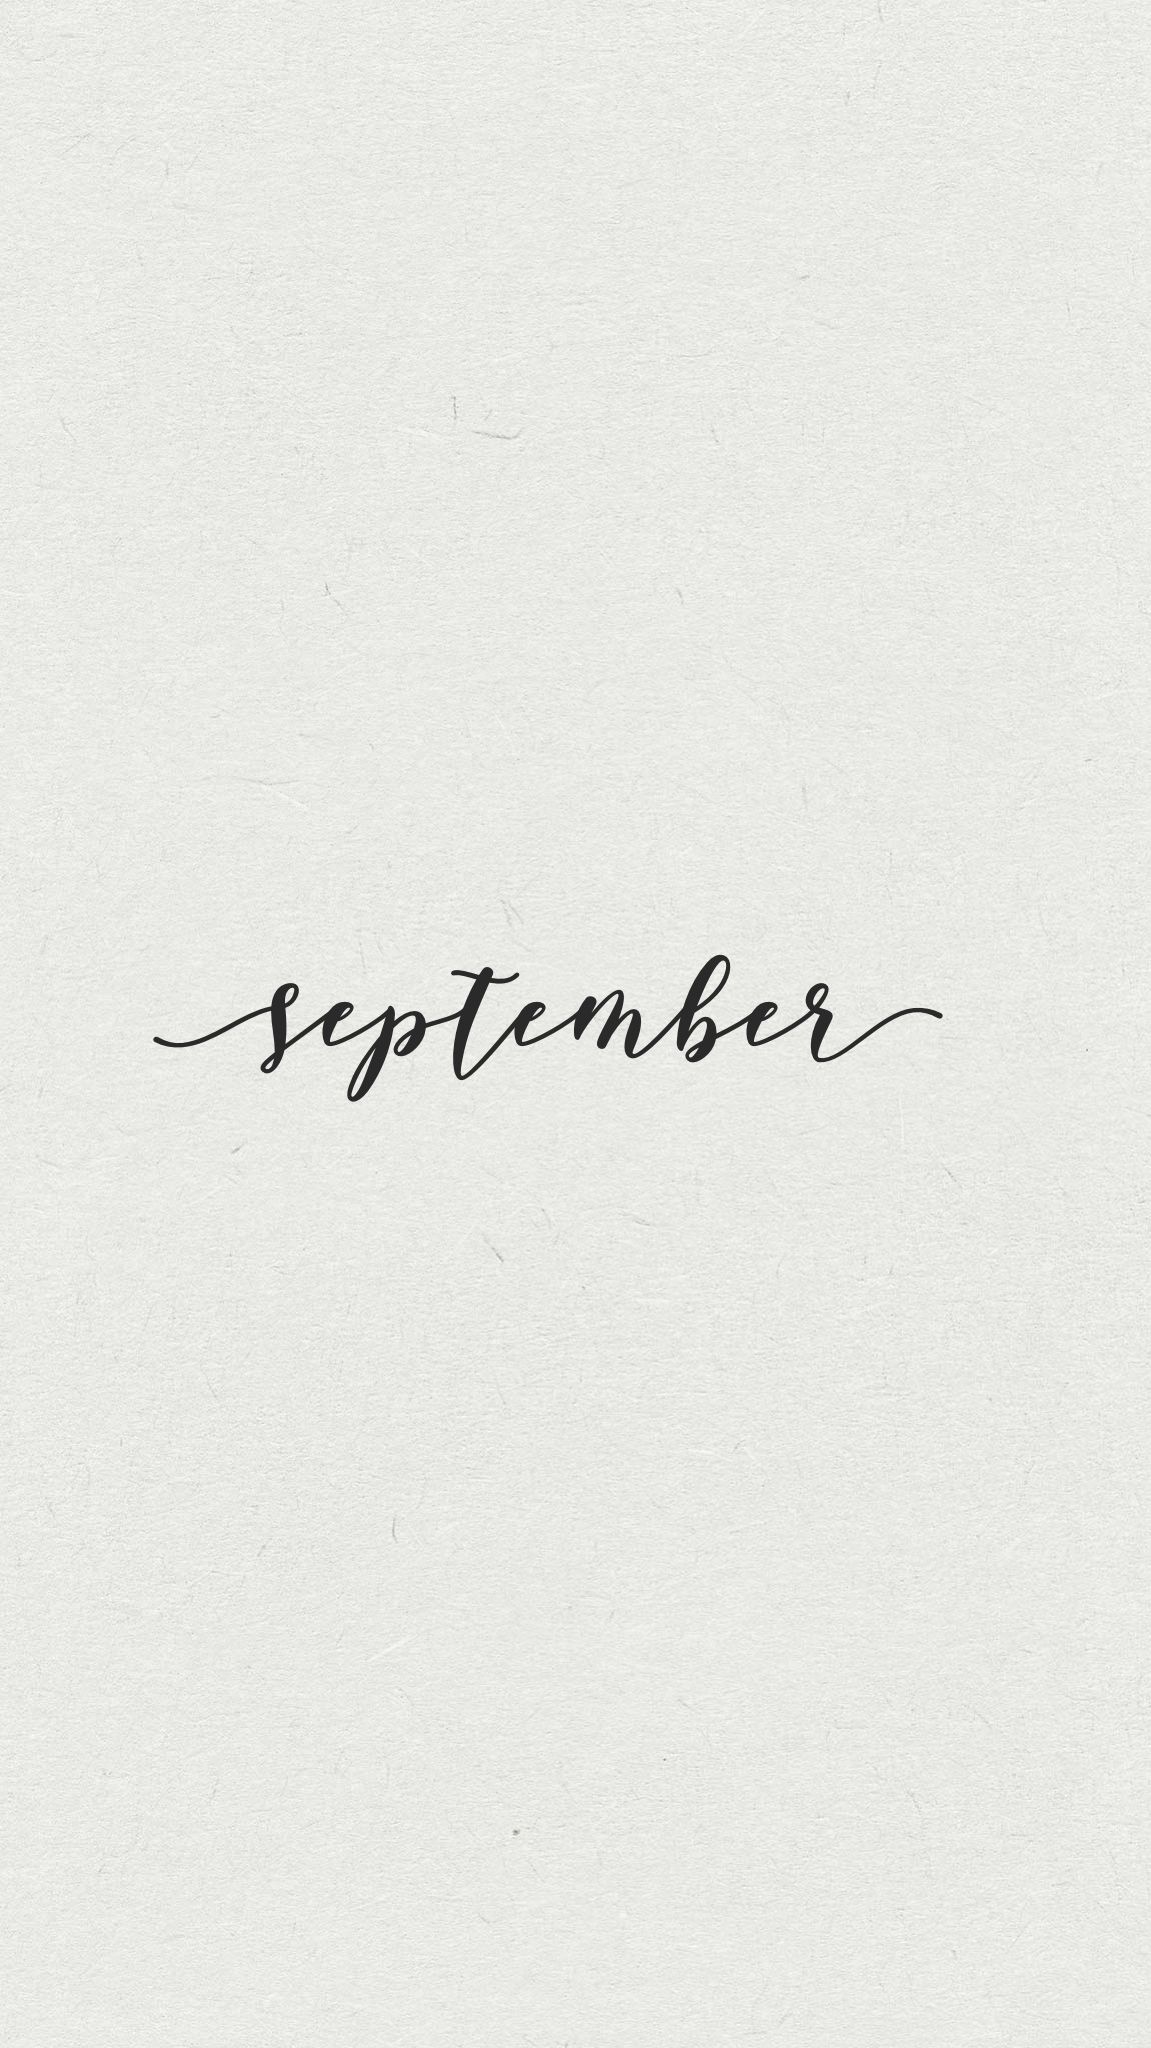 September. September wallpaper, Calligraphy wallpaper, Lettering